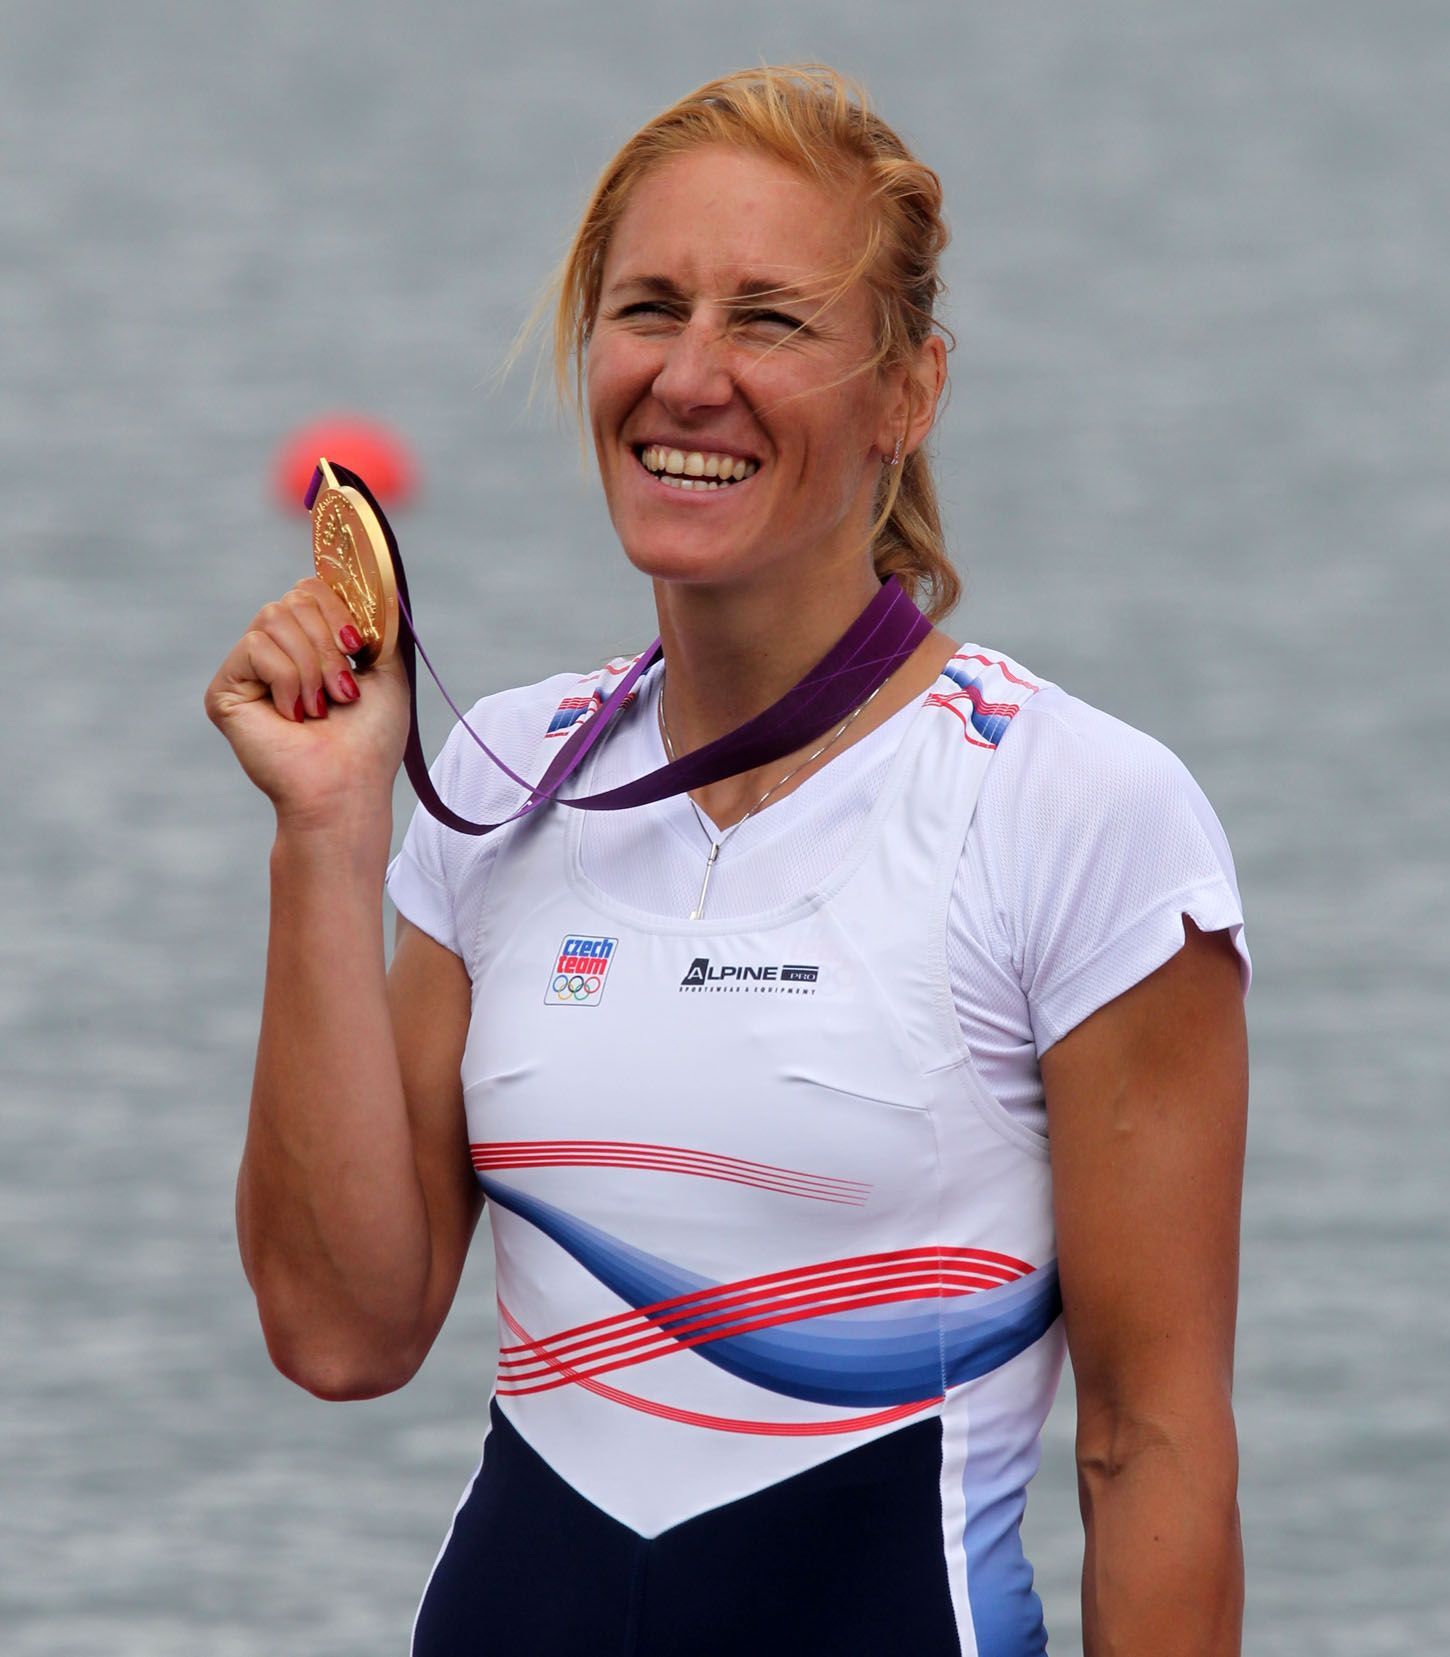 Česká veslařka Miroslava Knapková slaví zlatou medaili na OH 2012 v Londýně.